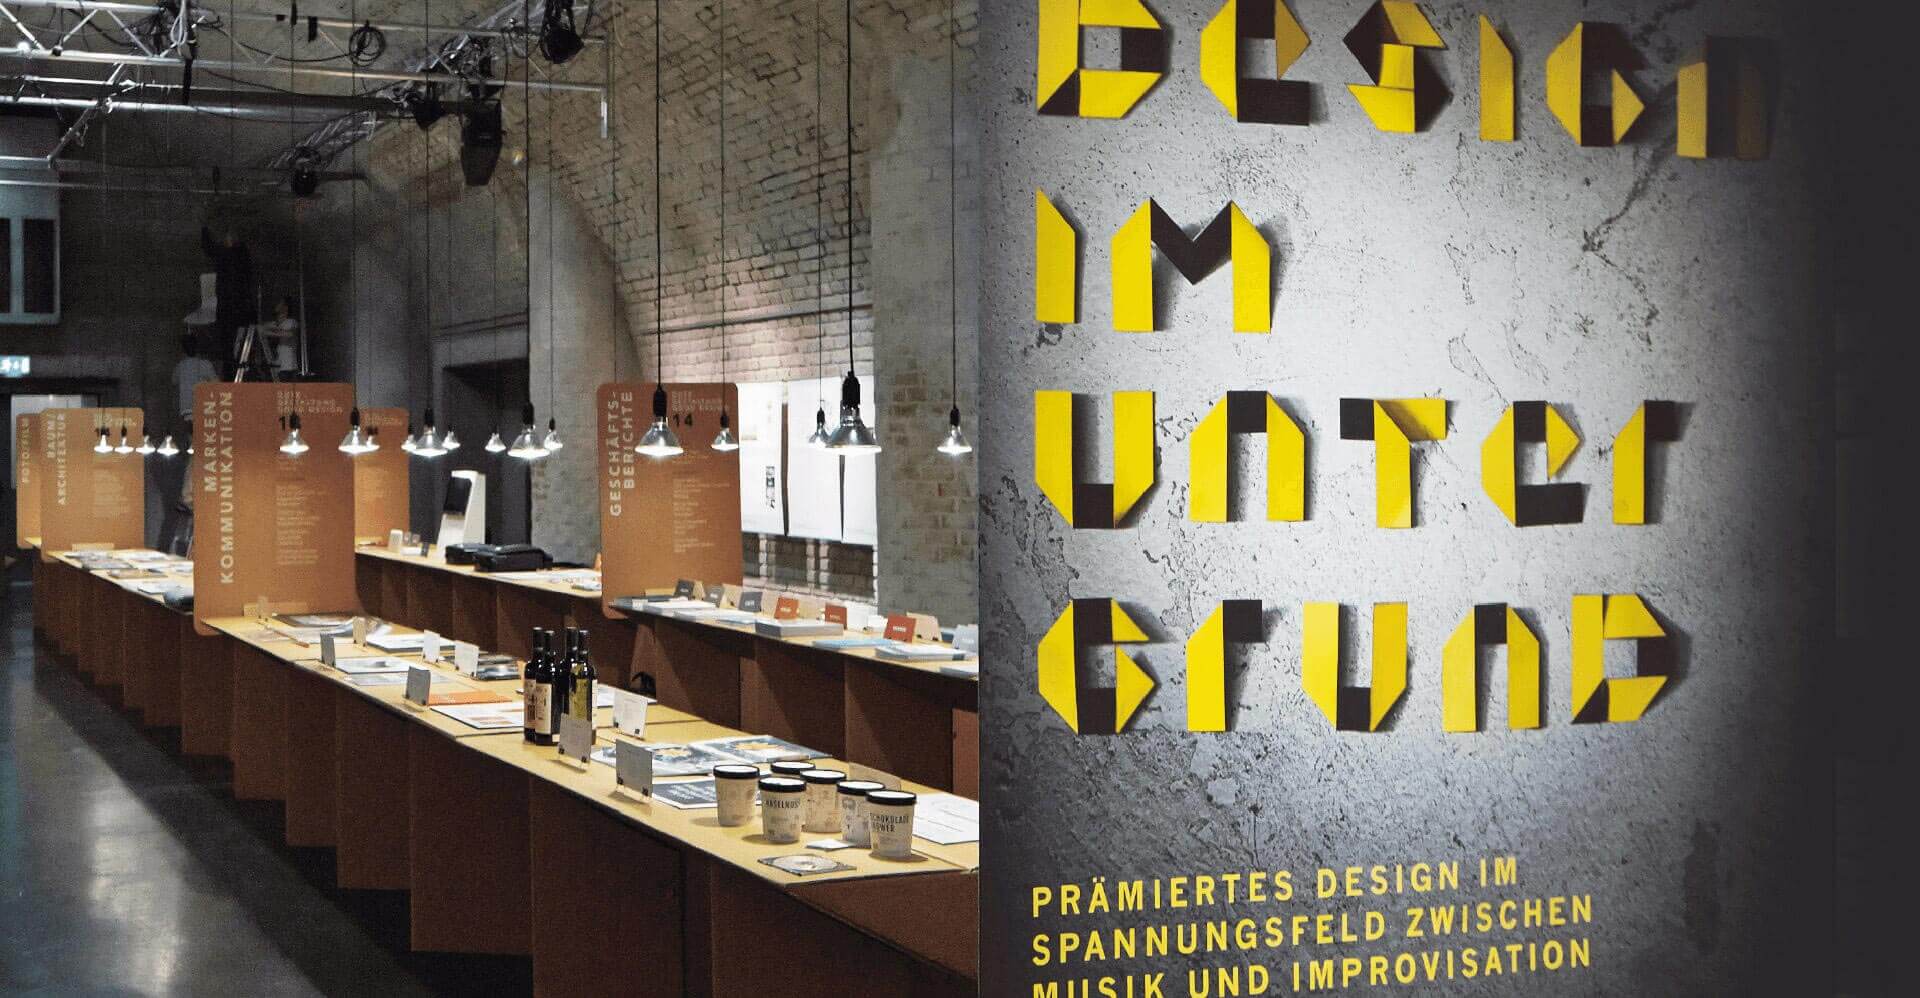 Ausstellungsräumlichkeiten und Plakat mit gelber Schrift von Ausstellungsevent Design im Untergrund